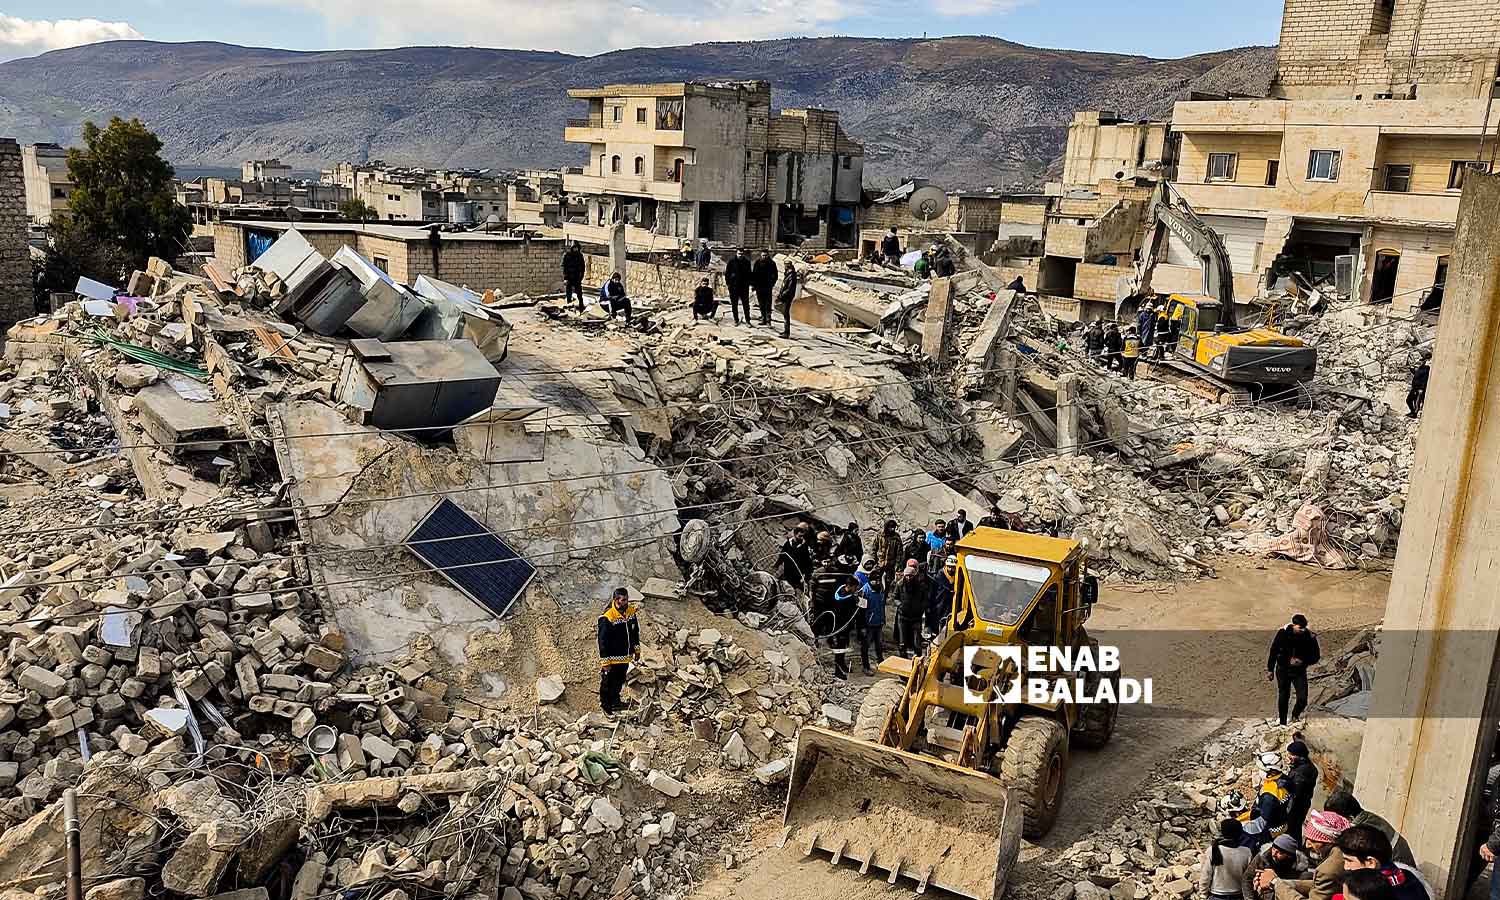 متطوعون يحاولون إنقاذ وانتشال الضحايا من تحت الركام في منطقة أرمناز إثر زلزال ضرب مناطق شمال غربي سوريا- 7 شباط 2023 (عنب بلدي/ إياد عبد الجواد)